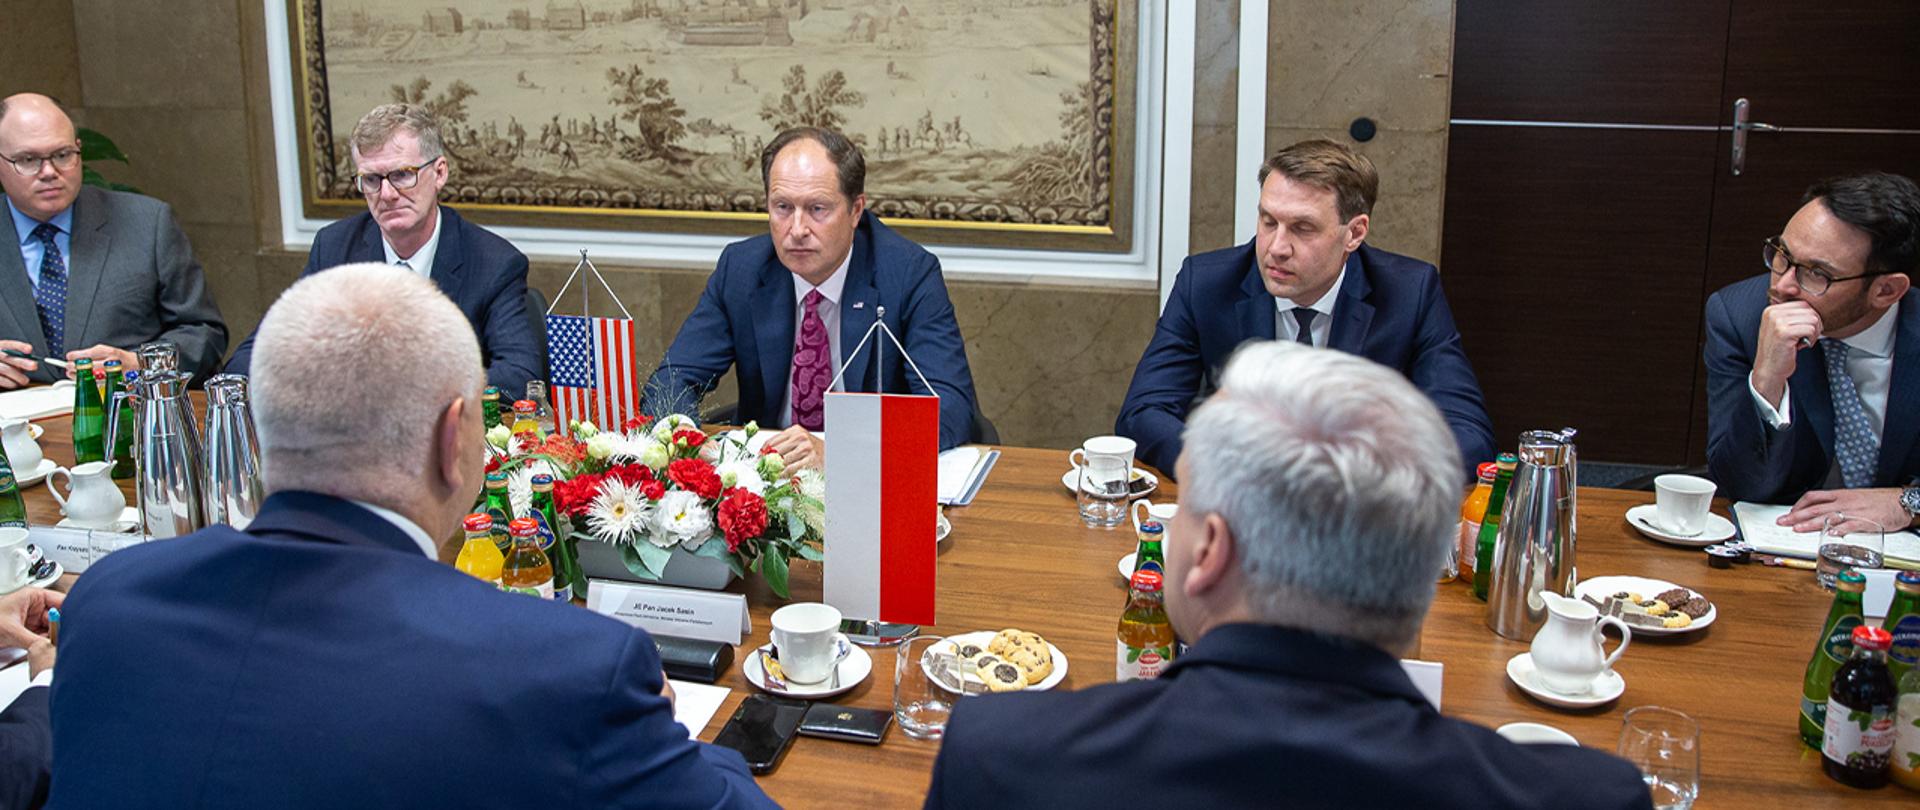 Wicepremier Jacek Sasin siedzi przy stole, obok siedzi inny mężczyzna. Po przeciwnej stronie delegacja amerykańska. Na stole stoją proporczyki i kwiaty. 